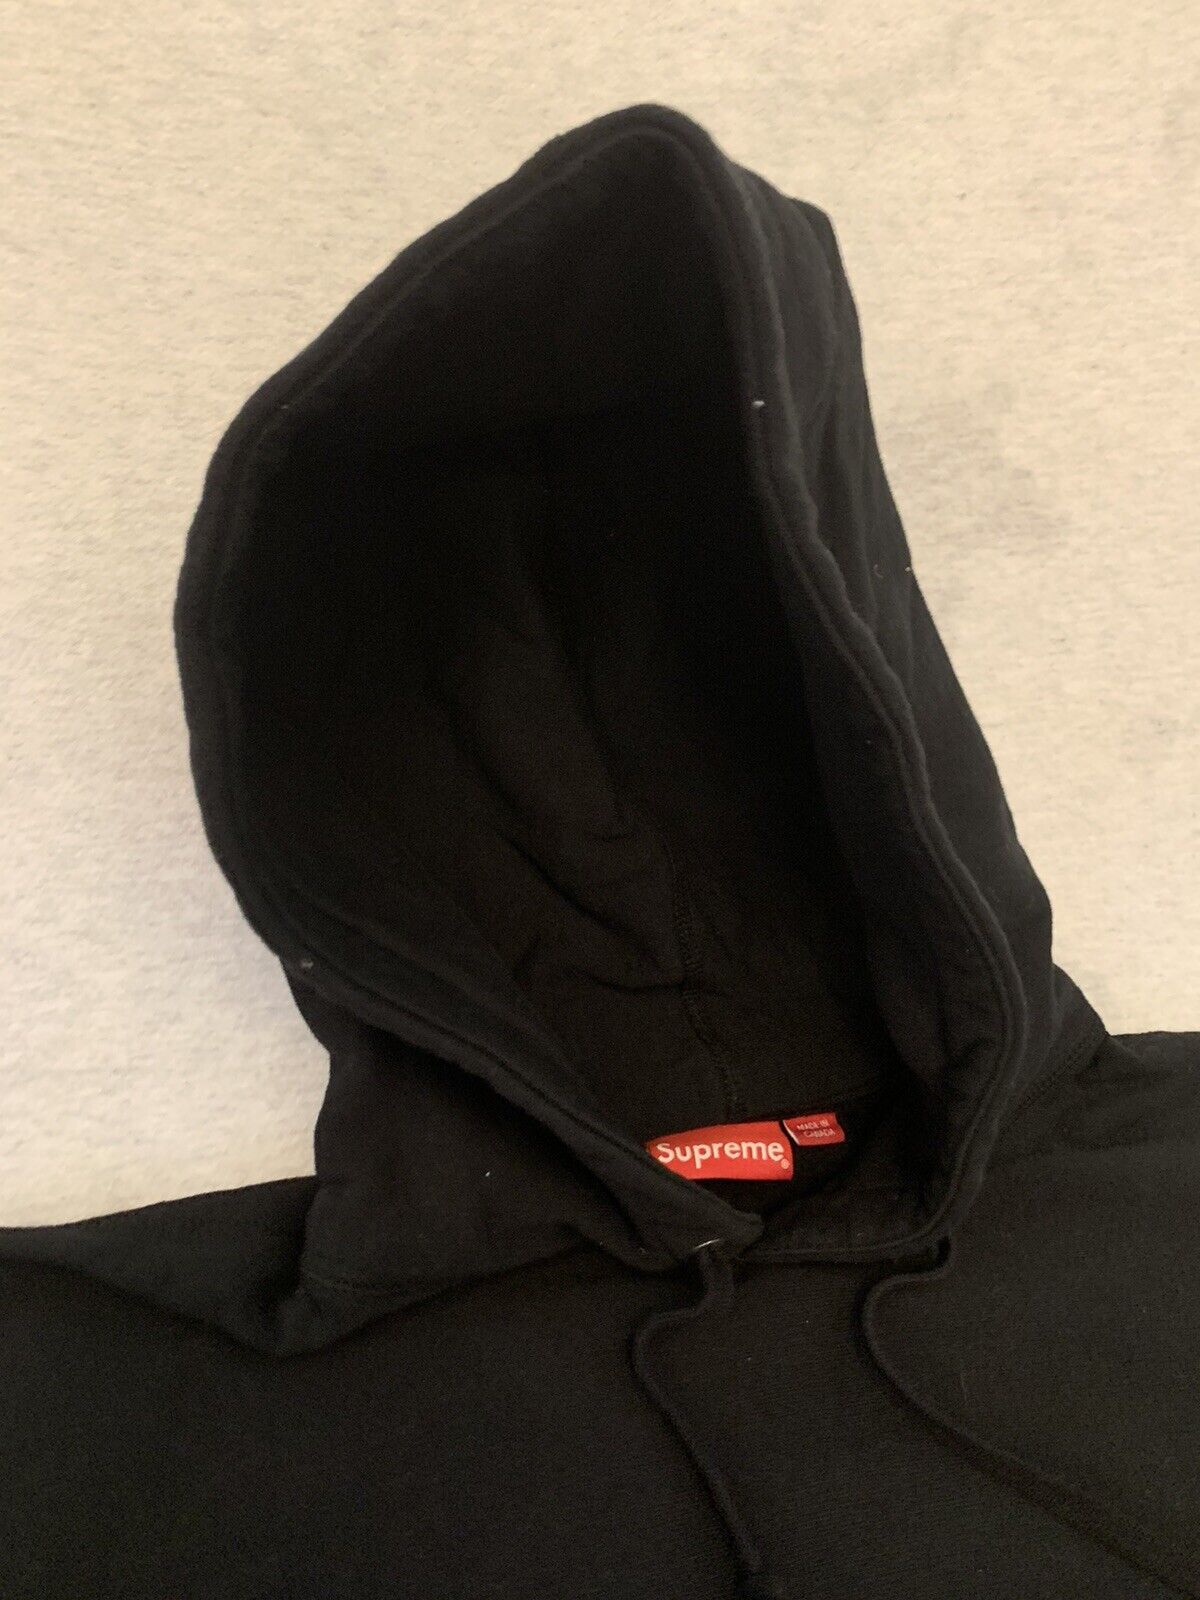 Supreme Studded Logo Hooded Sweatshirt Black Size L S… - Gem